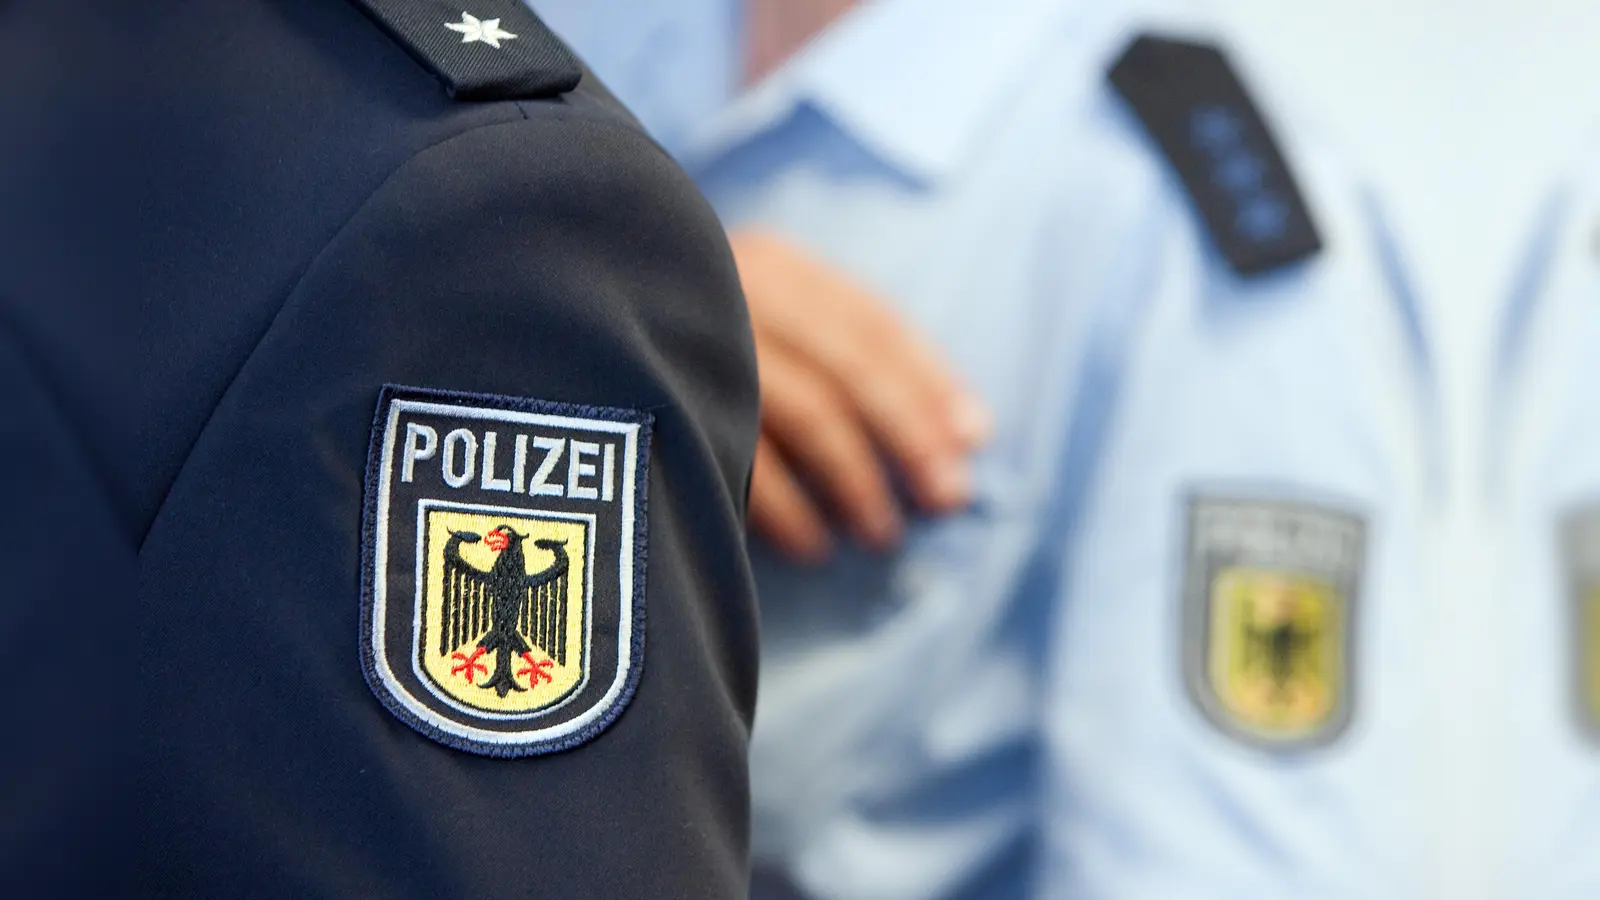 Die Bundespolizei Waidhaus nimmt am Wochenende mehrere Gesuchte fest und beschlagnahmt zahlreiche Waffen. (Bild: Friso Gentsch/dpa)